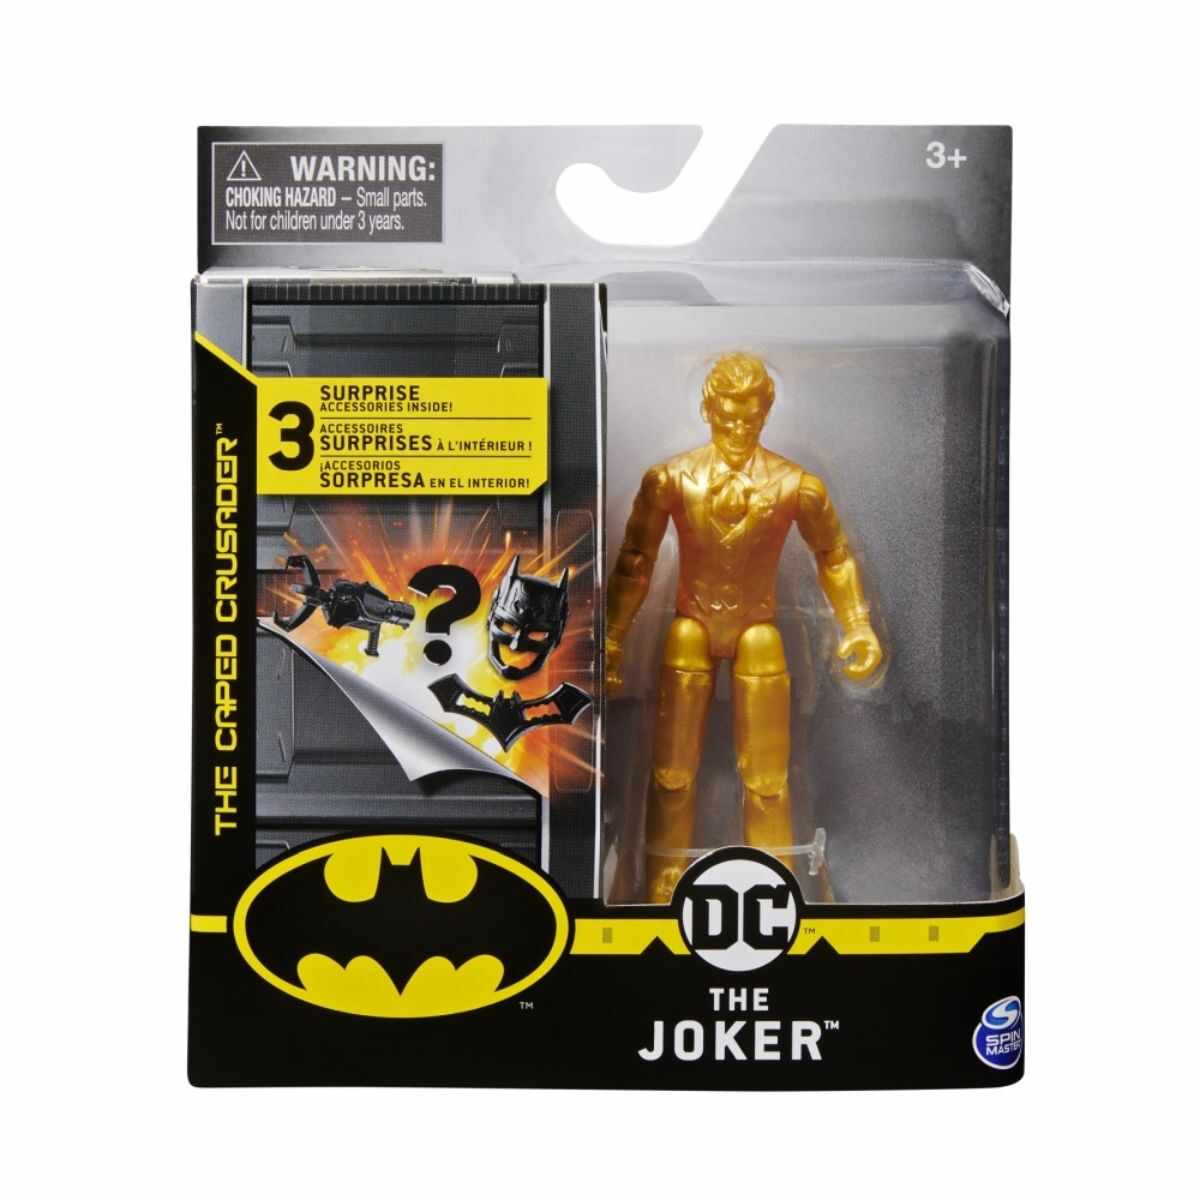 Set Figurina cu accesorii surpriza Batman, The Joker, 20125783